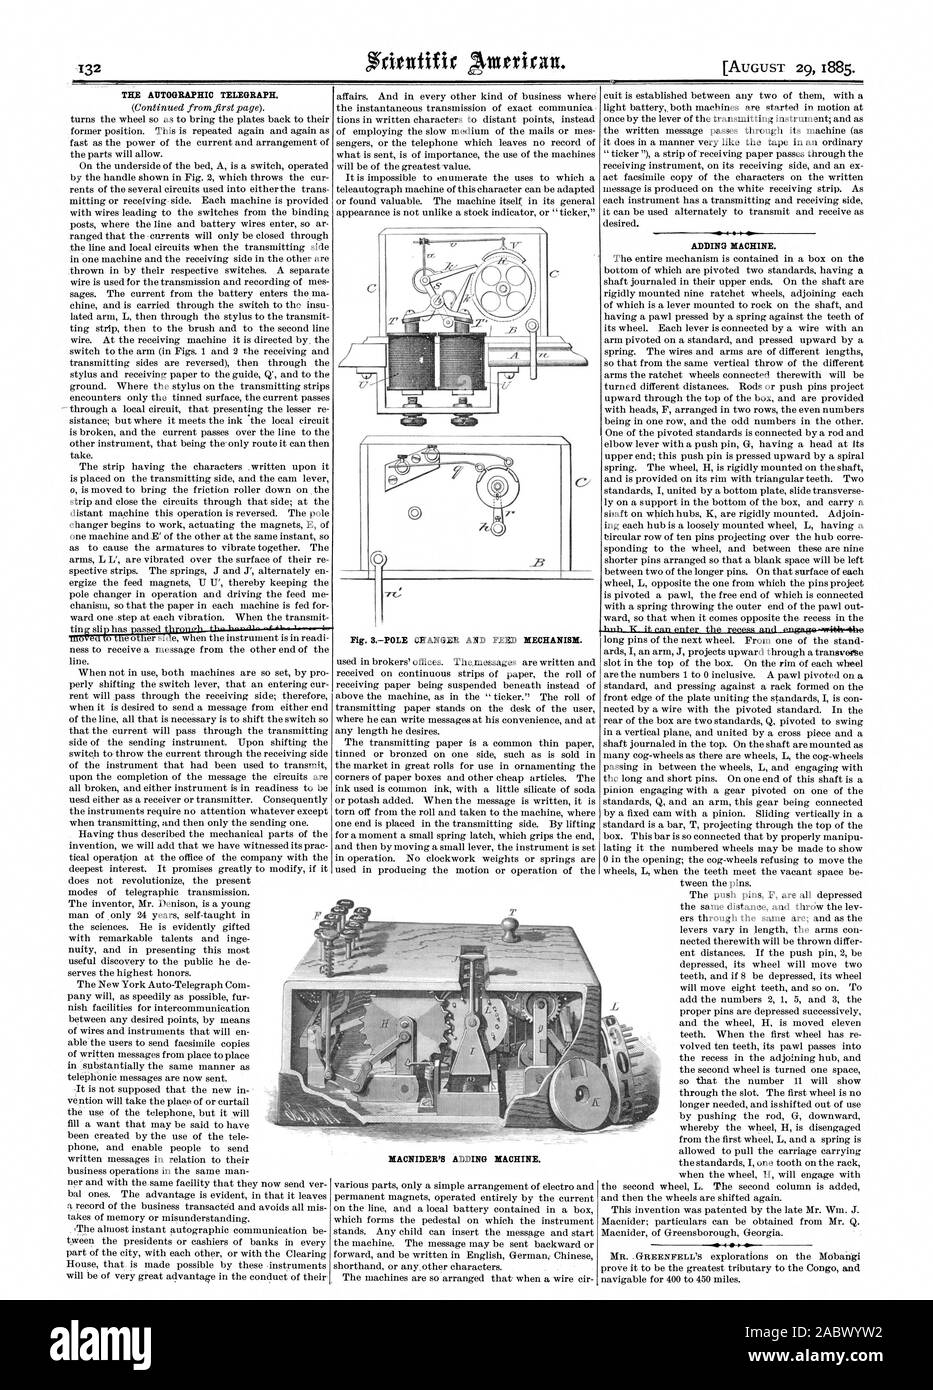 THE AUTOGRAPHIC TELEGRAPH. ADDING MACHINE. est., scientific american, 1885-08-29 Stock Photo